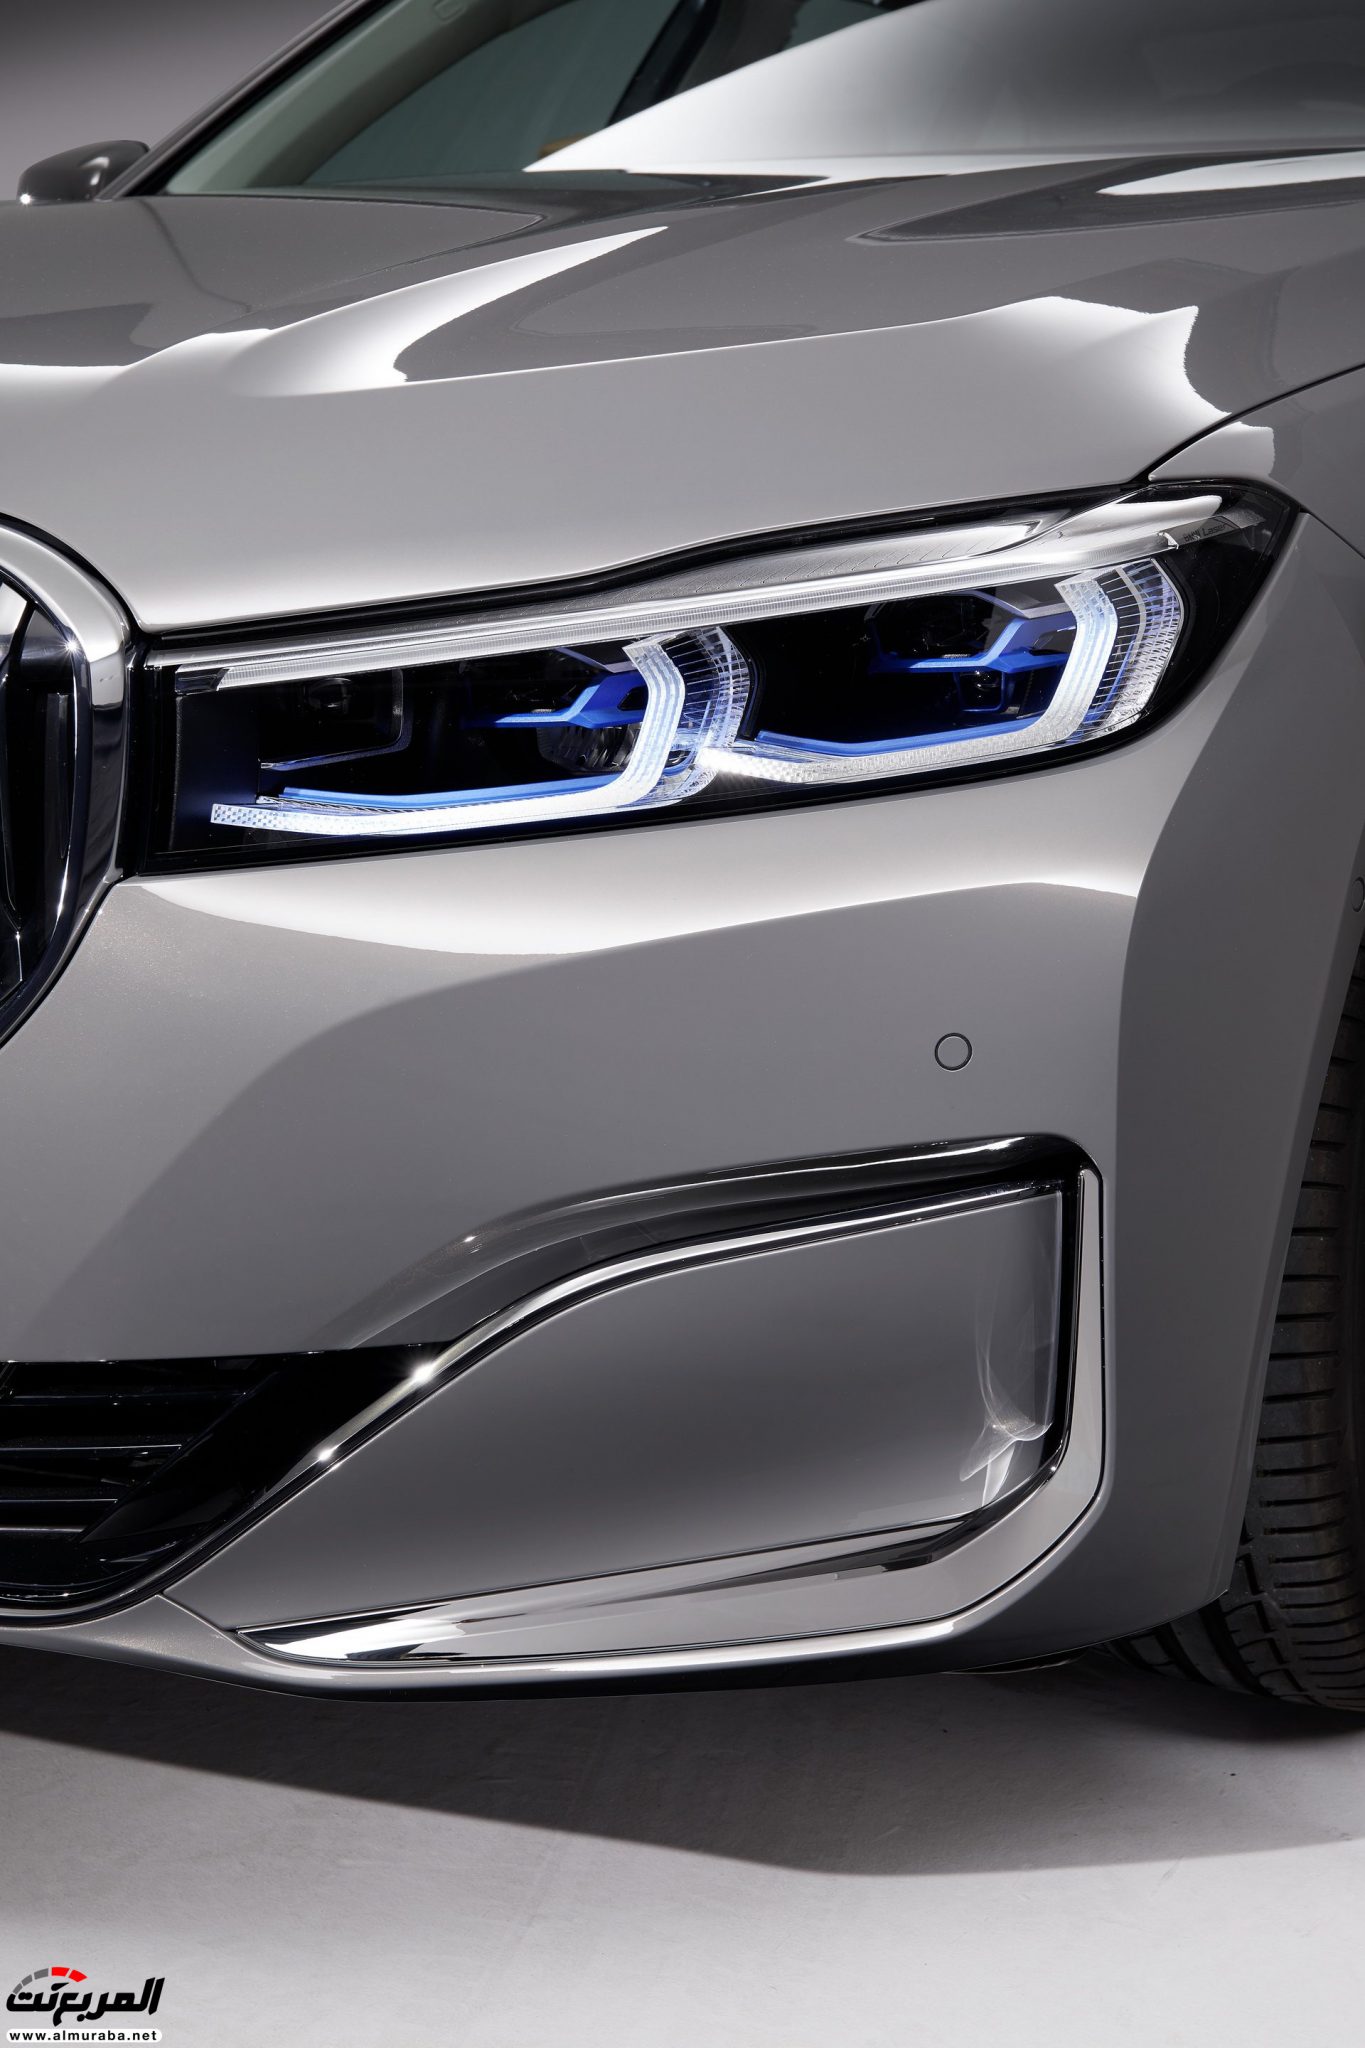 بي ام دبليو الفئة السابعة 2020 المحدثة تكشف نفسها رسمياً "صور ومواصفات" BMW 7 Series 231